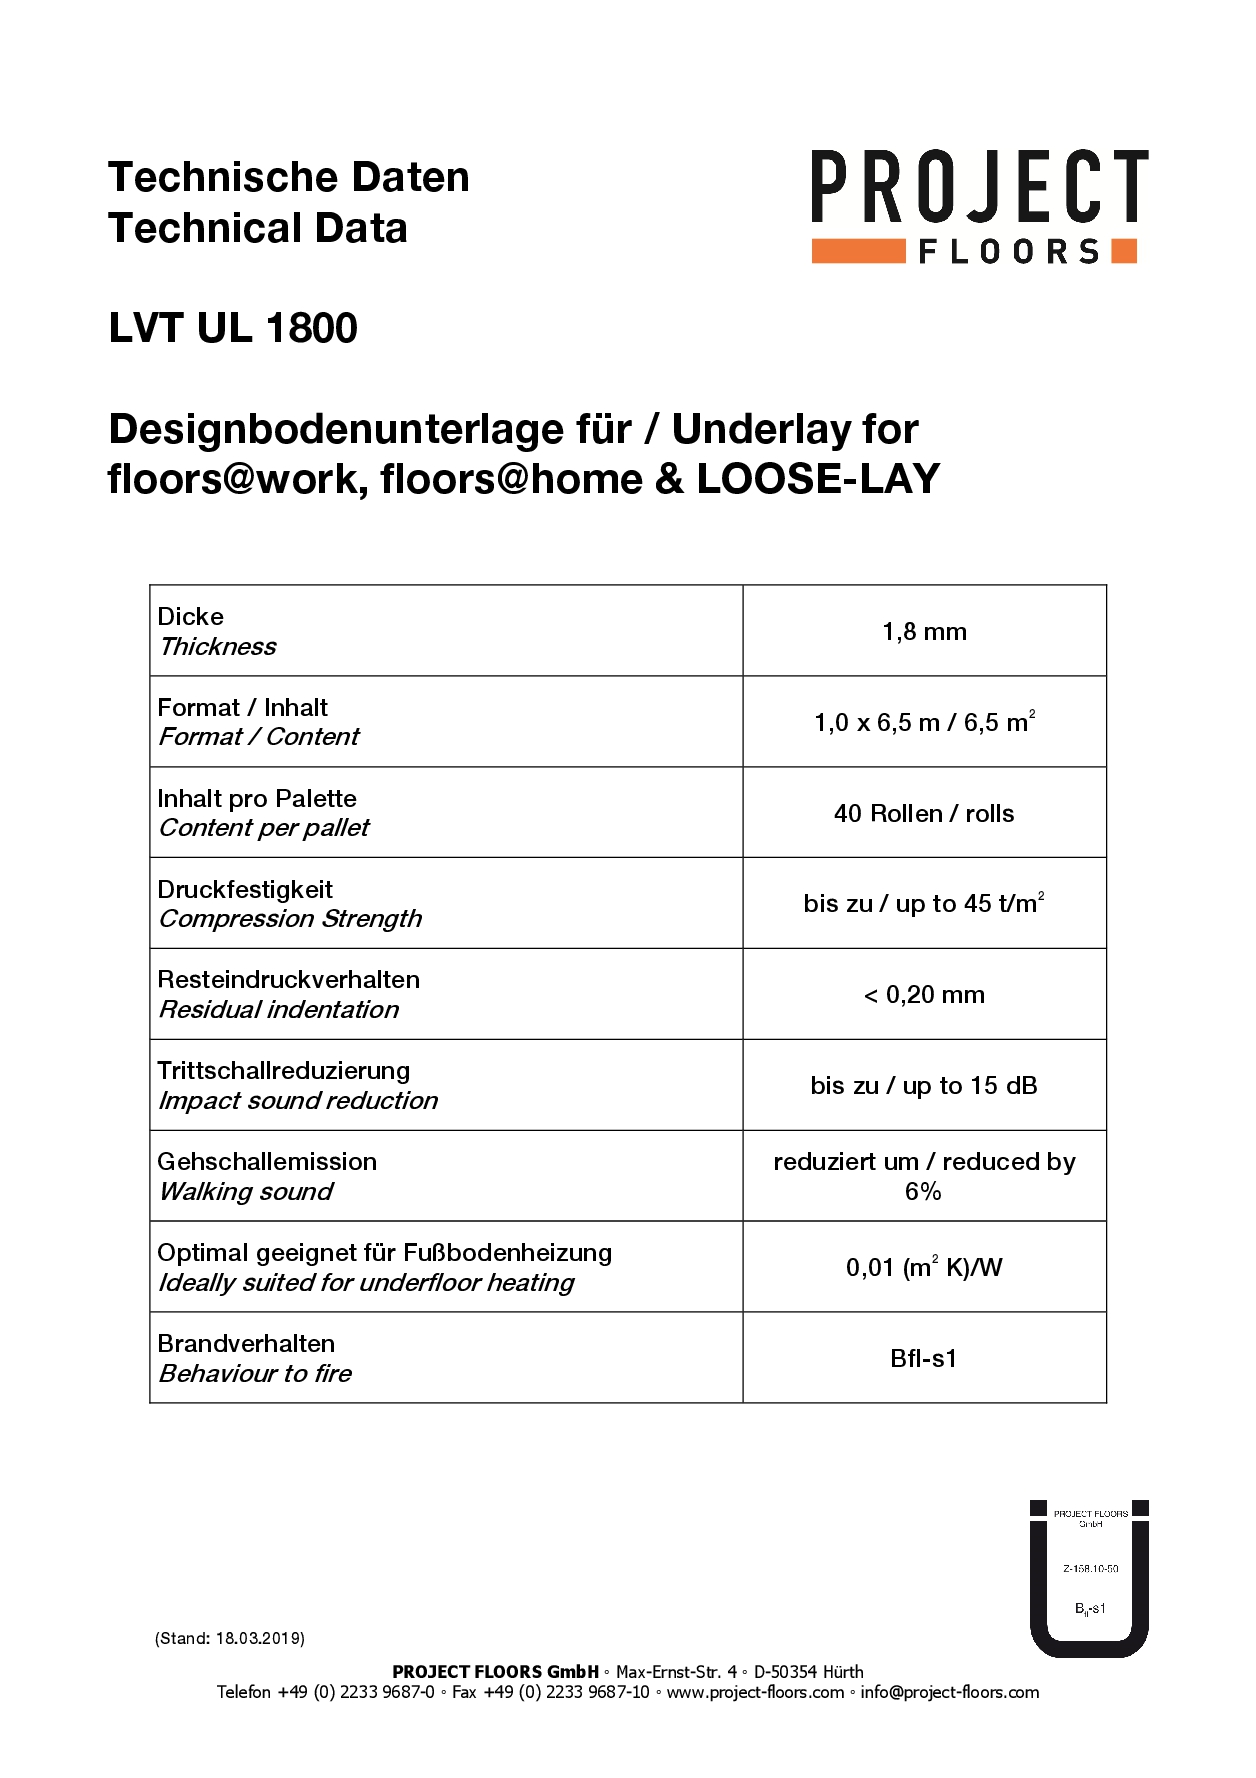 Tabelle Technische Information der selbstklebenden Trittschallunterlage LVT UL 1800 von Project Floors